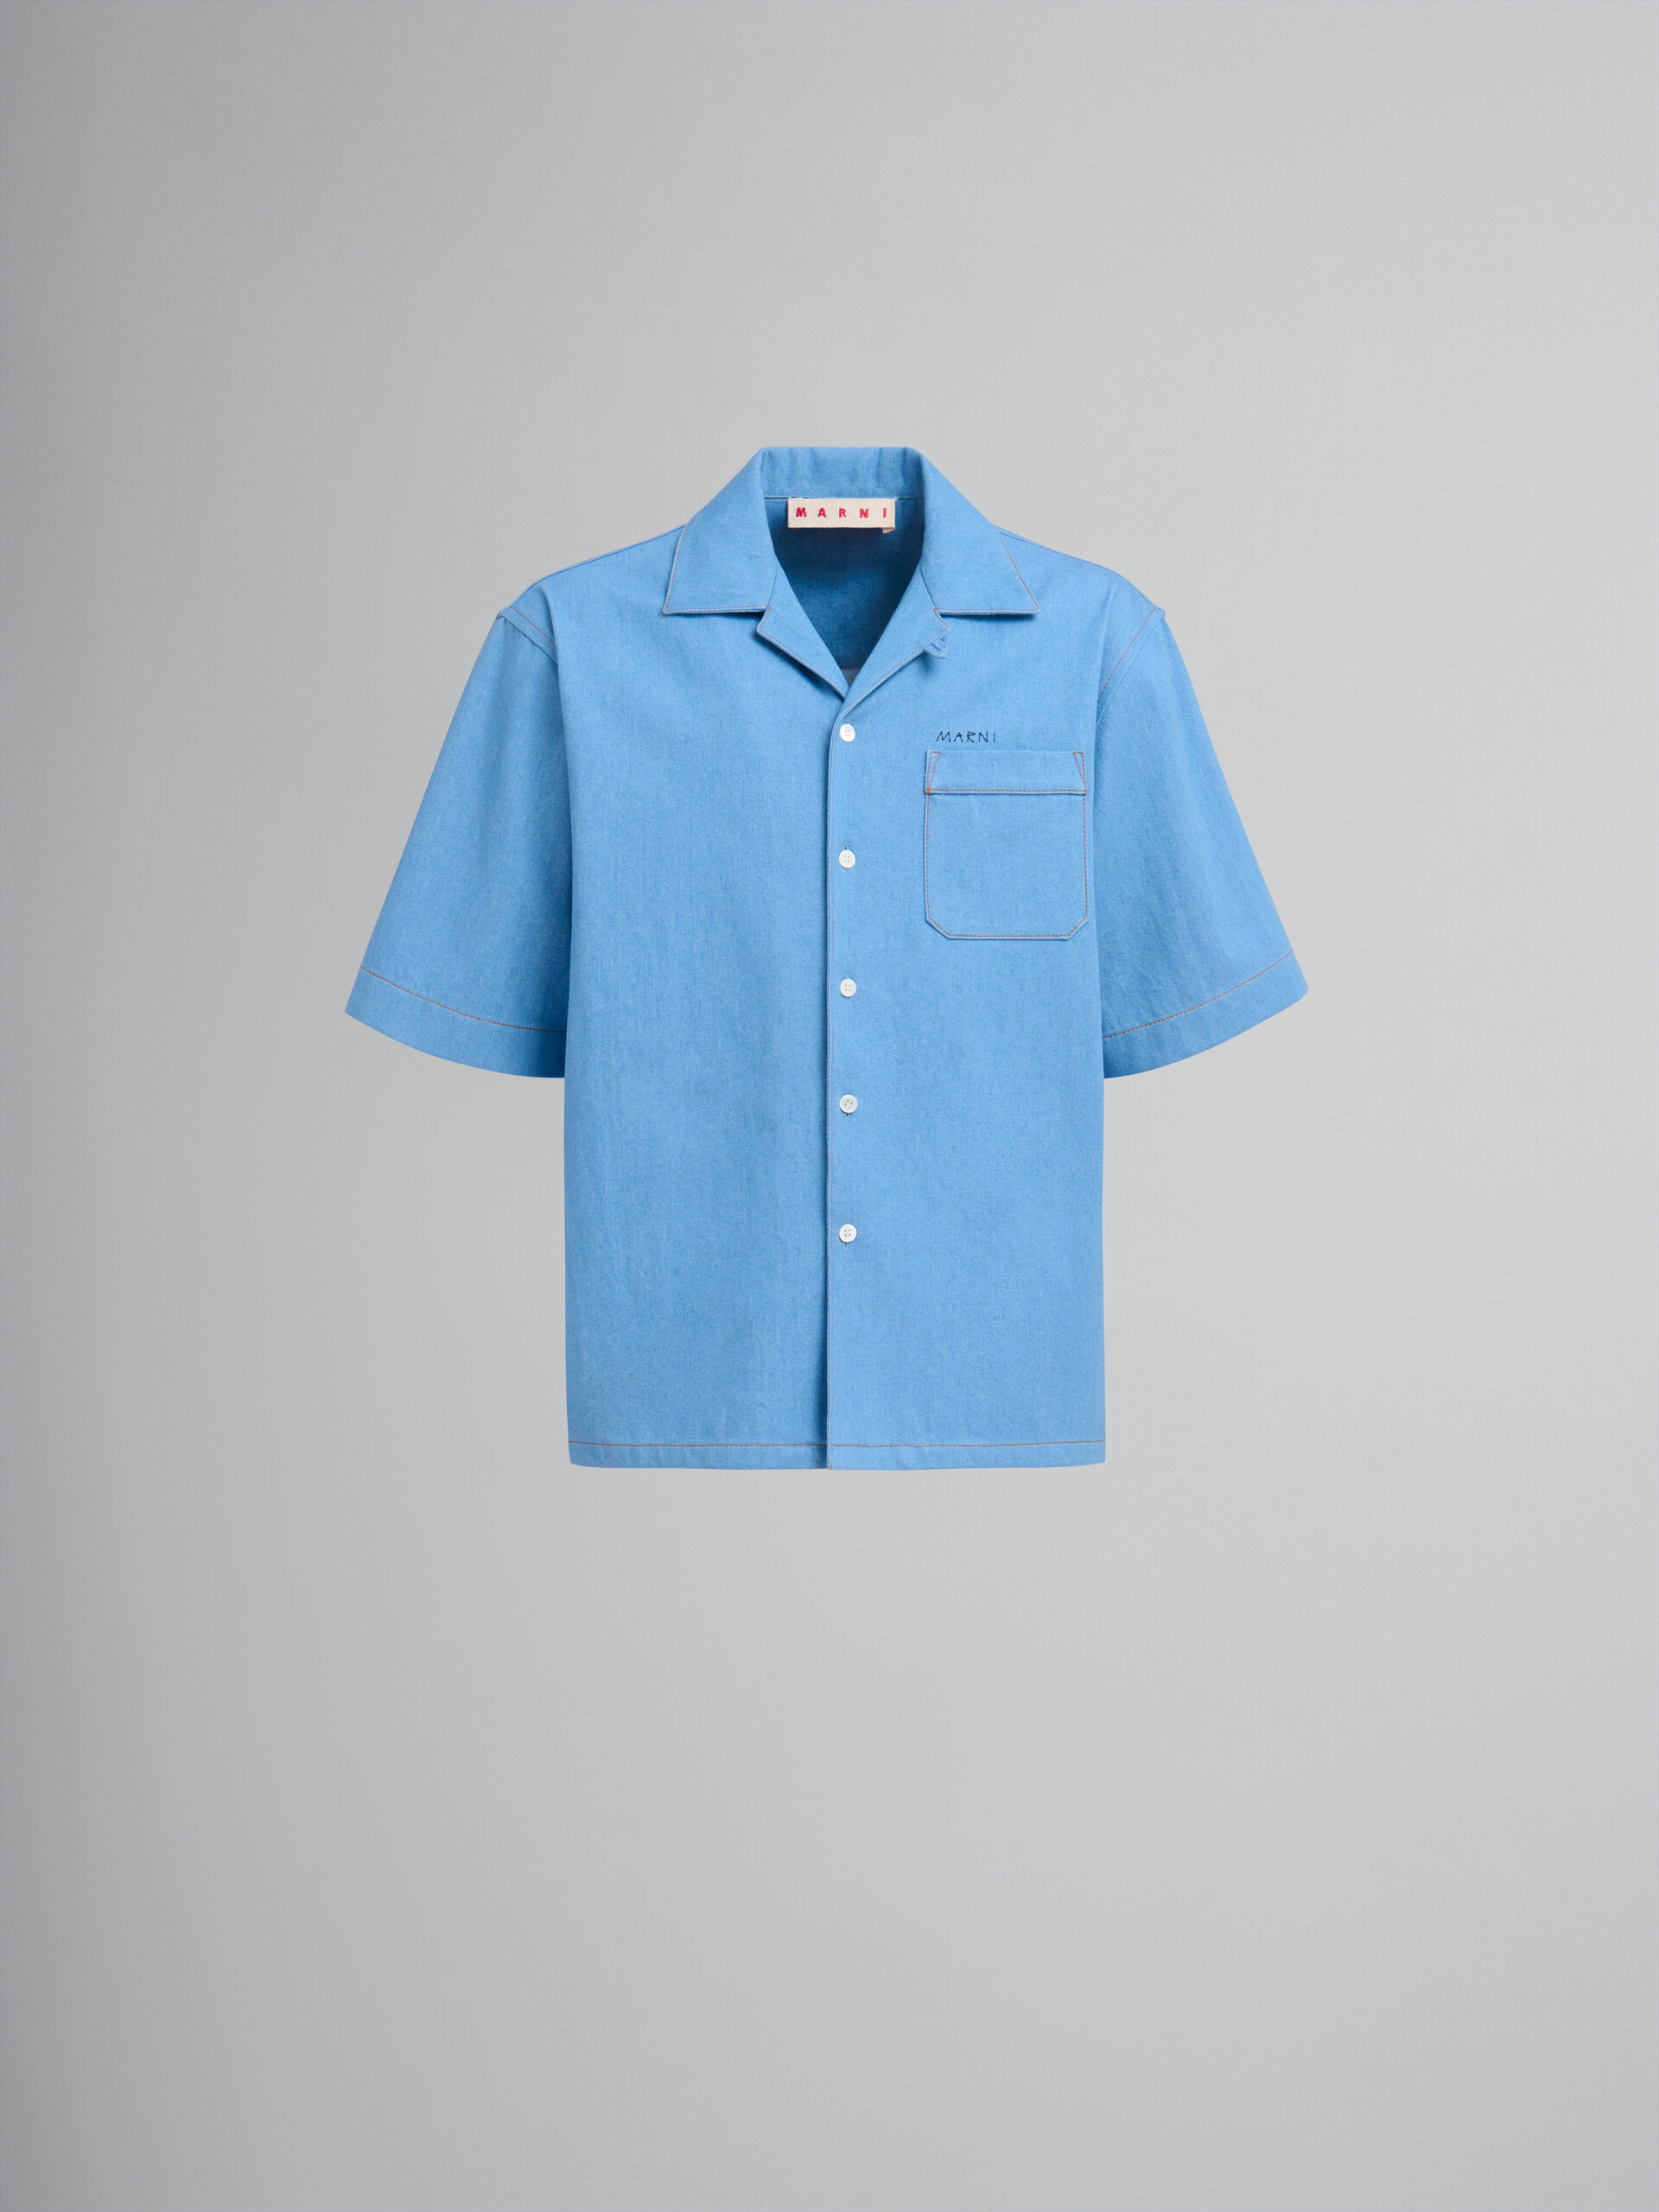 Camisa de bolos de denim azul con el logotipo Marni efecto remiendo - Camisas - Image 1